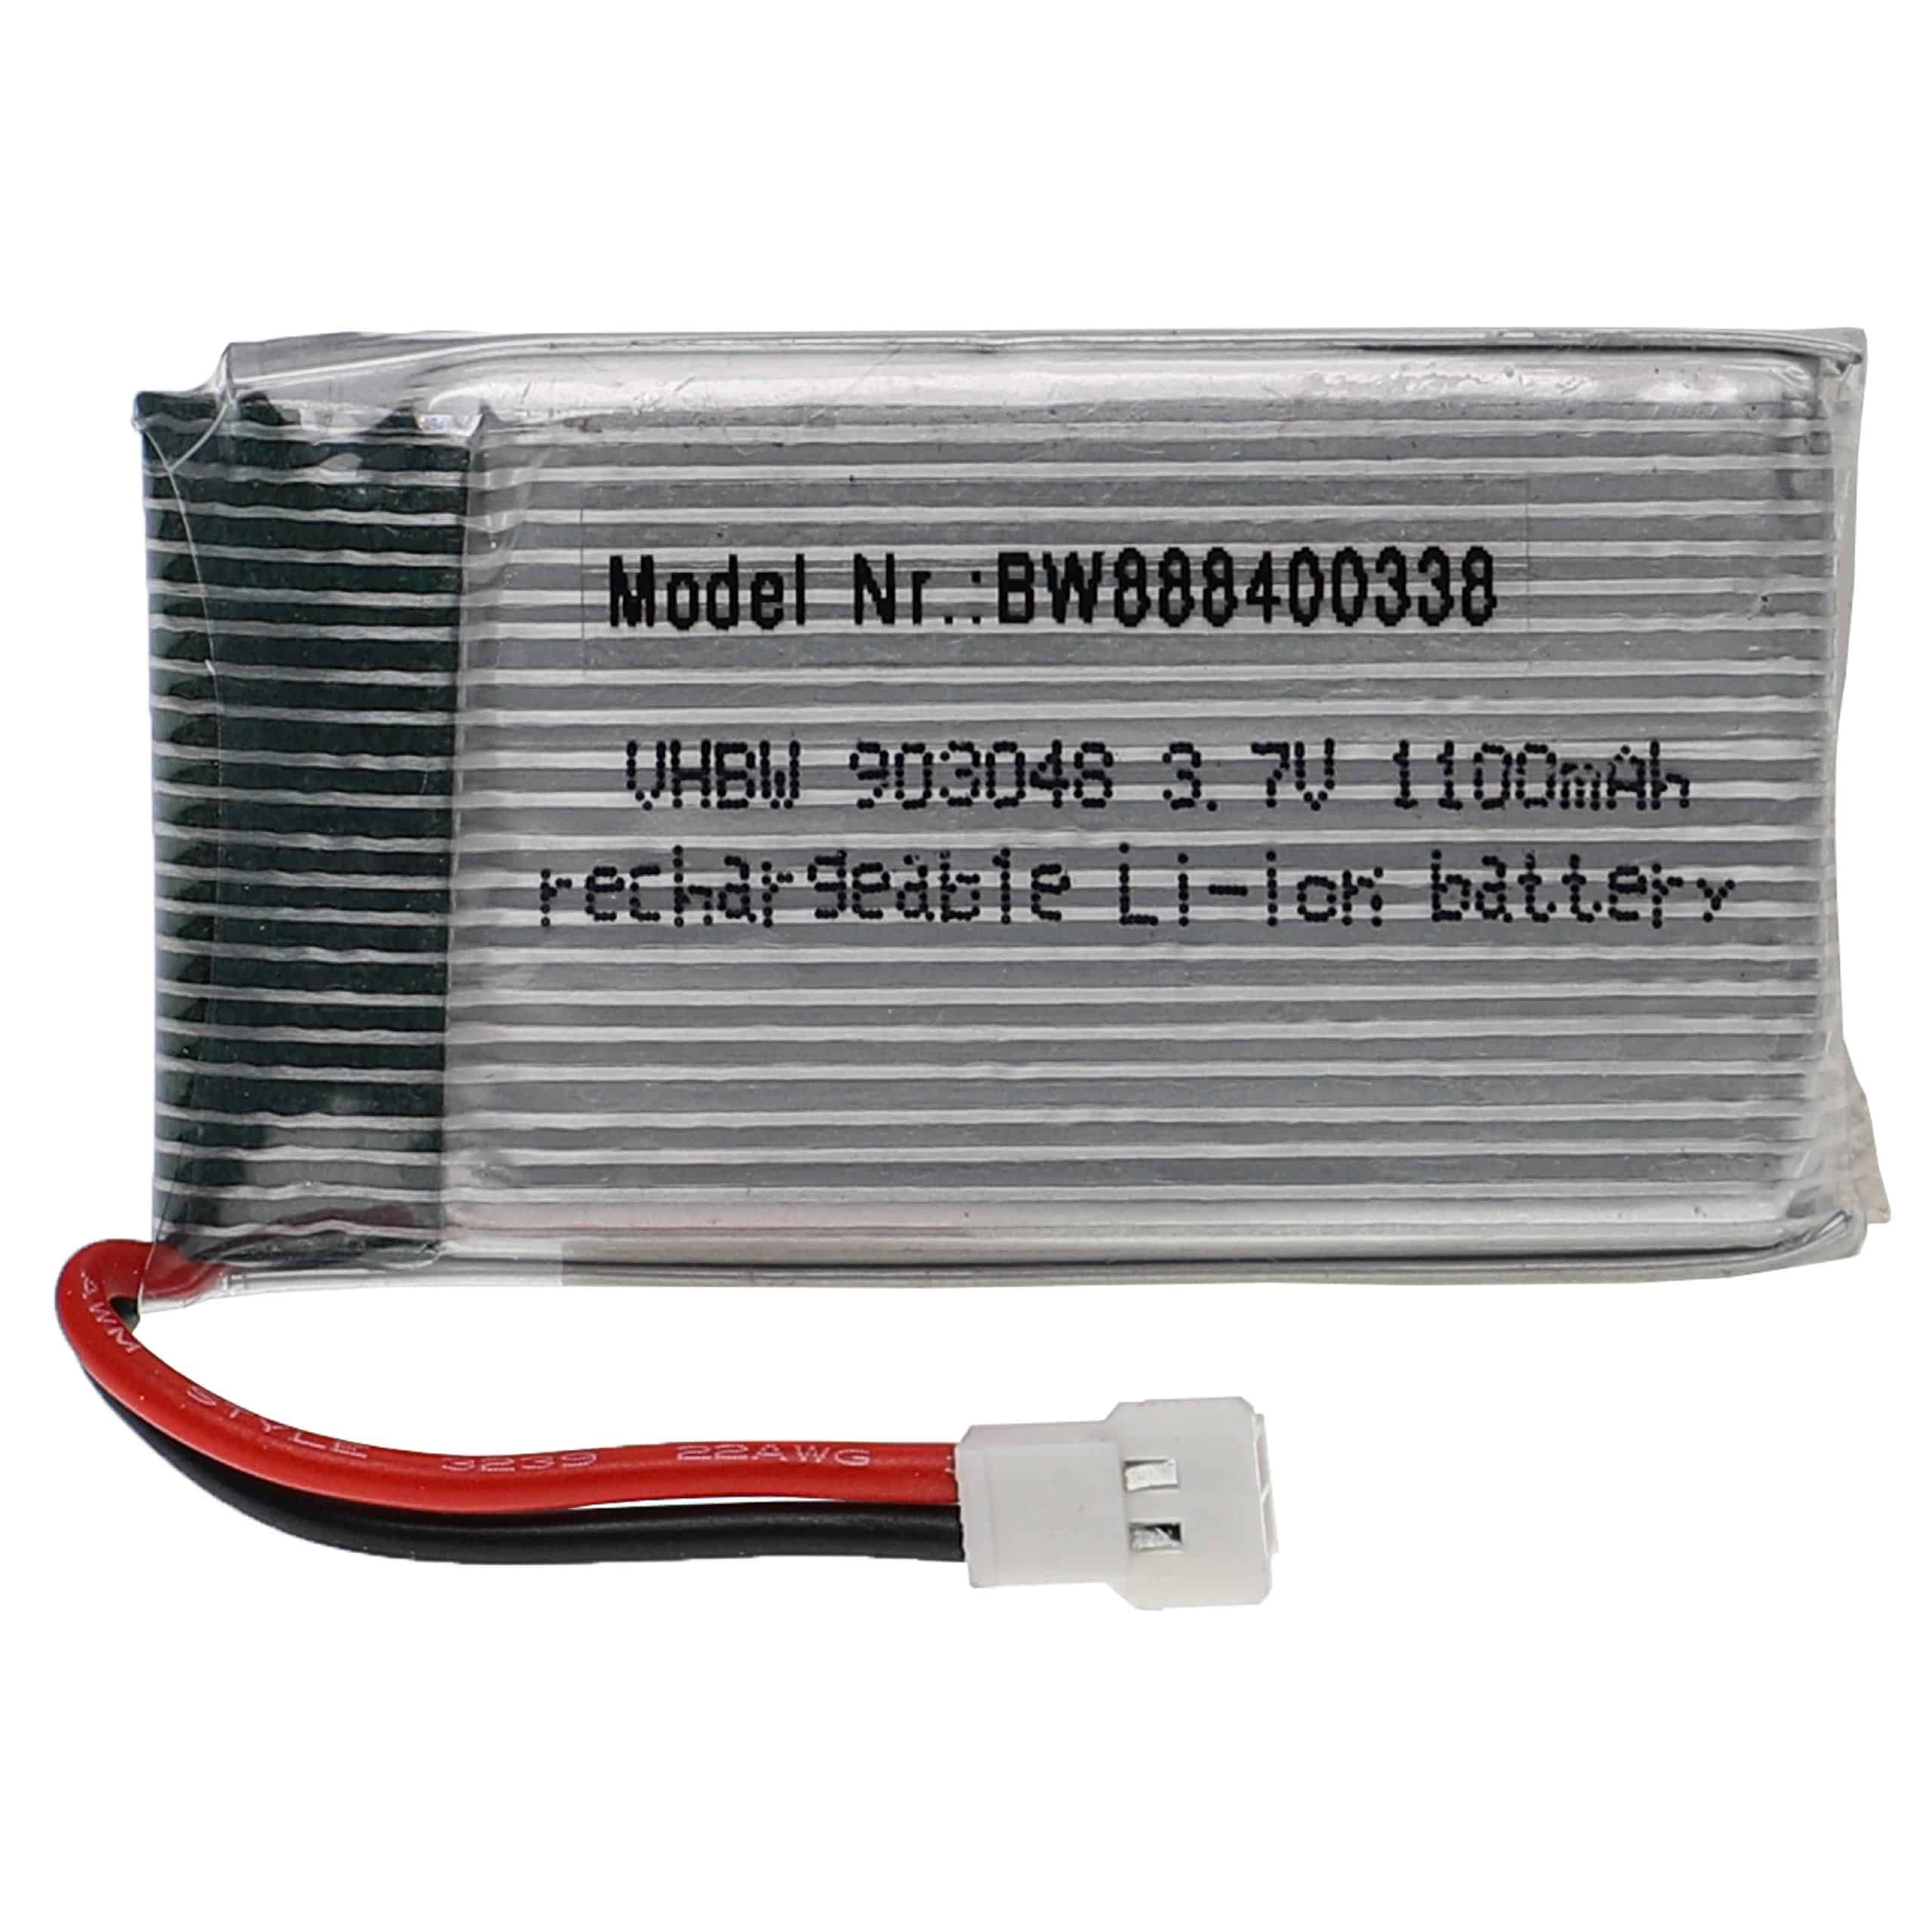 Akumulator do modeli zdalnie sterowanych RC - 1100 mAh 3,7 V LiPo, XH 2.54 2P